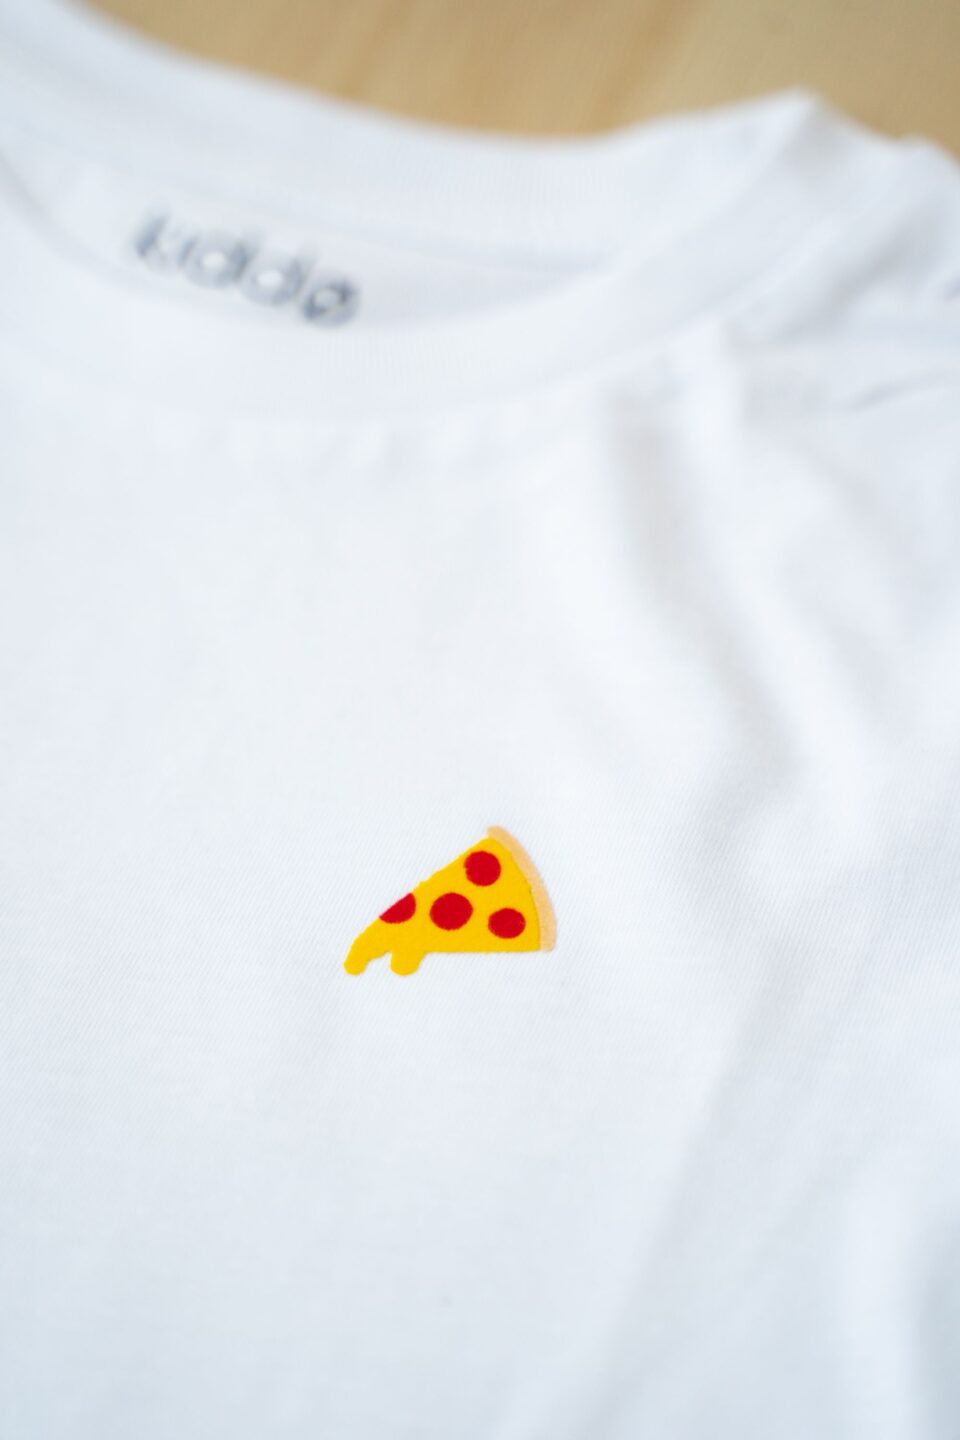 KIddo_Kids shirt_minimal_white_pizza